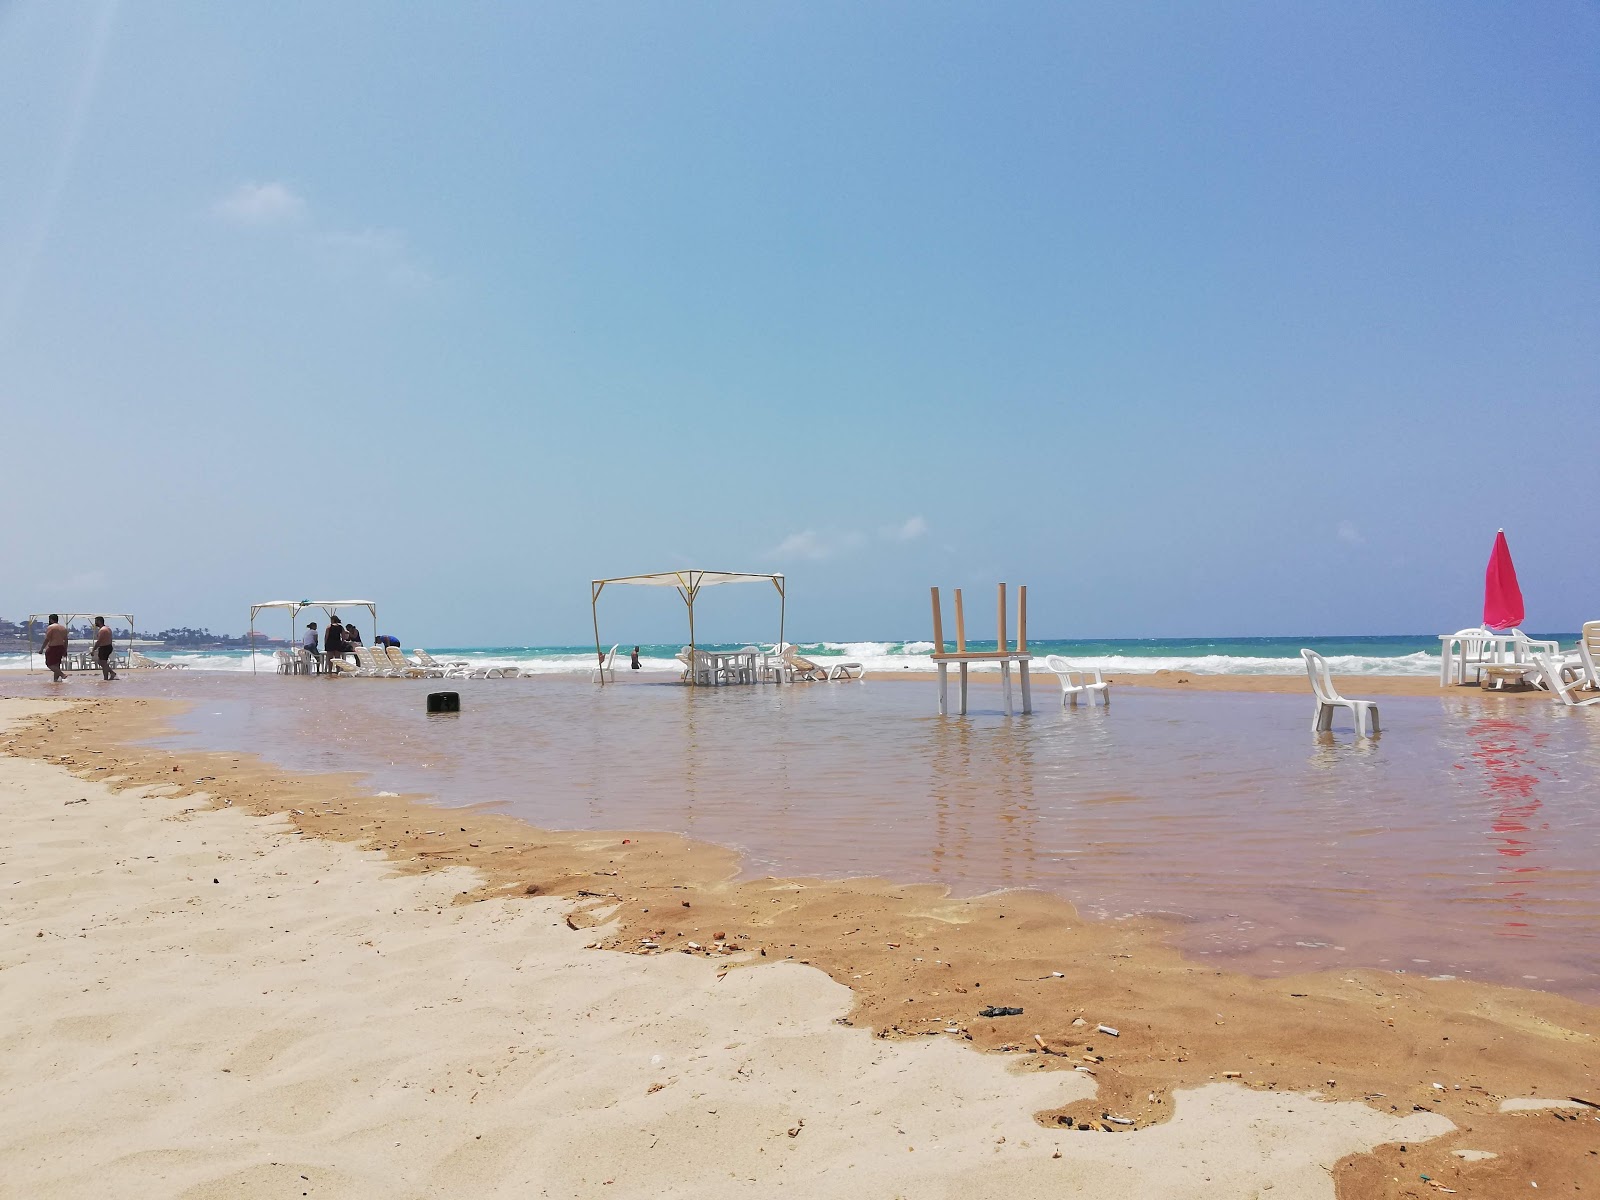 Wadi El Zayni'in fotoğrafı geniş plaj ile birlikte